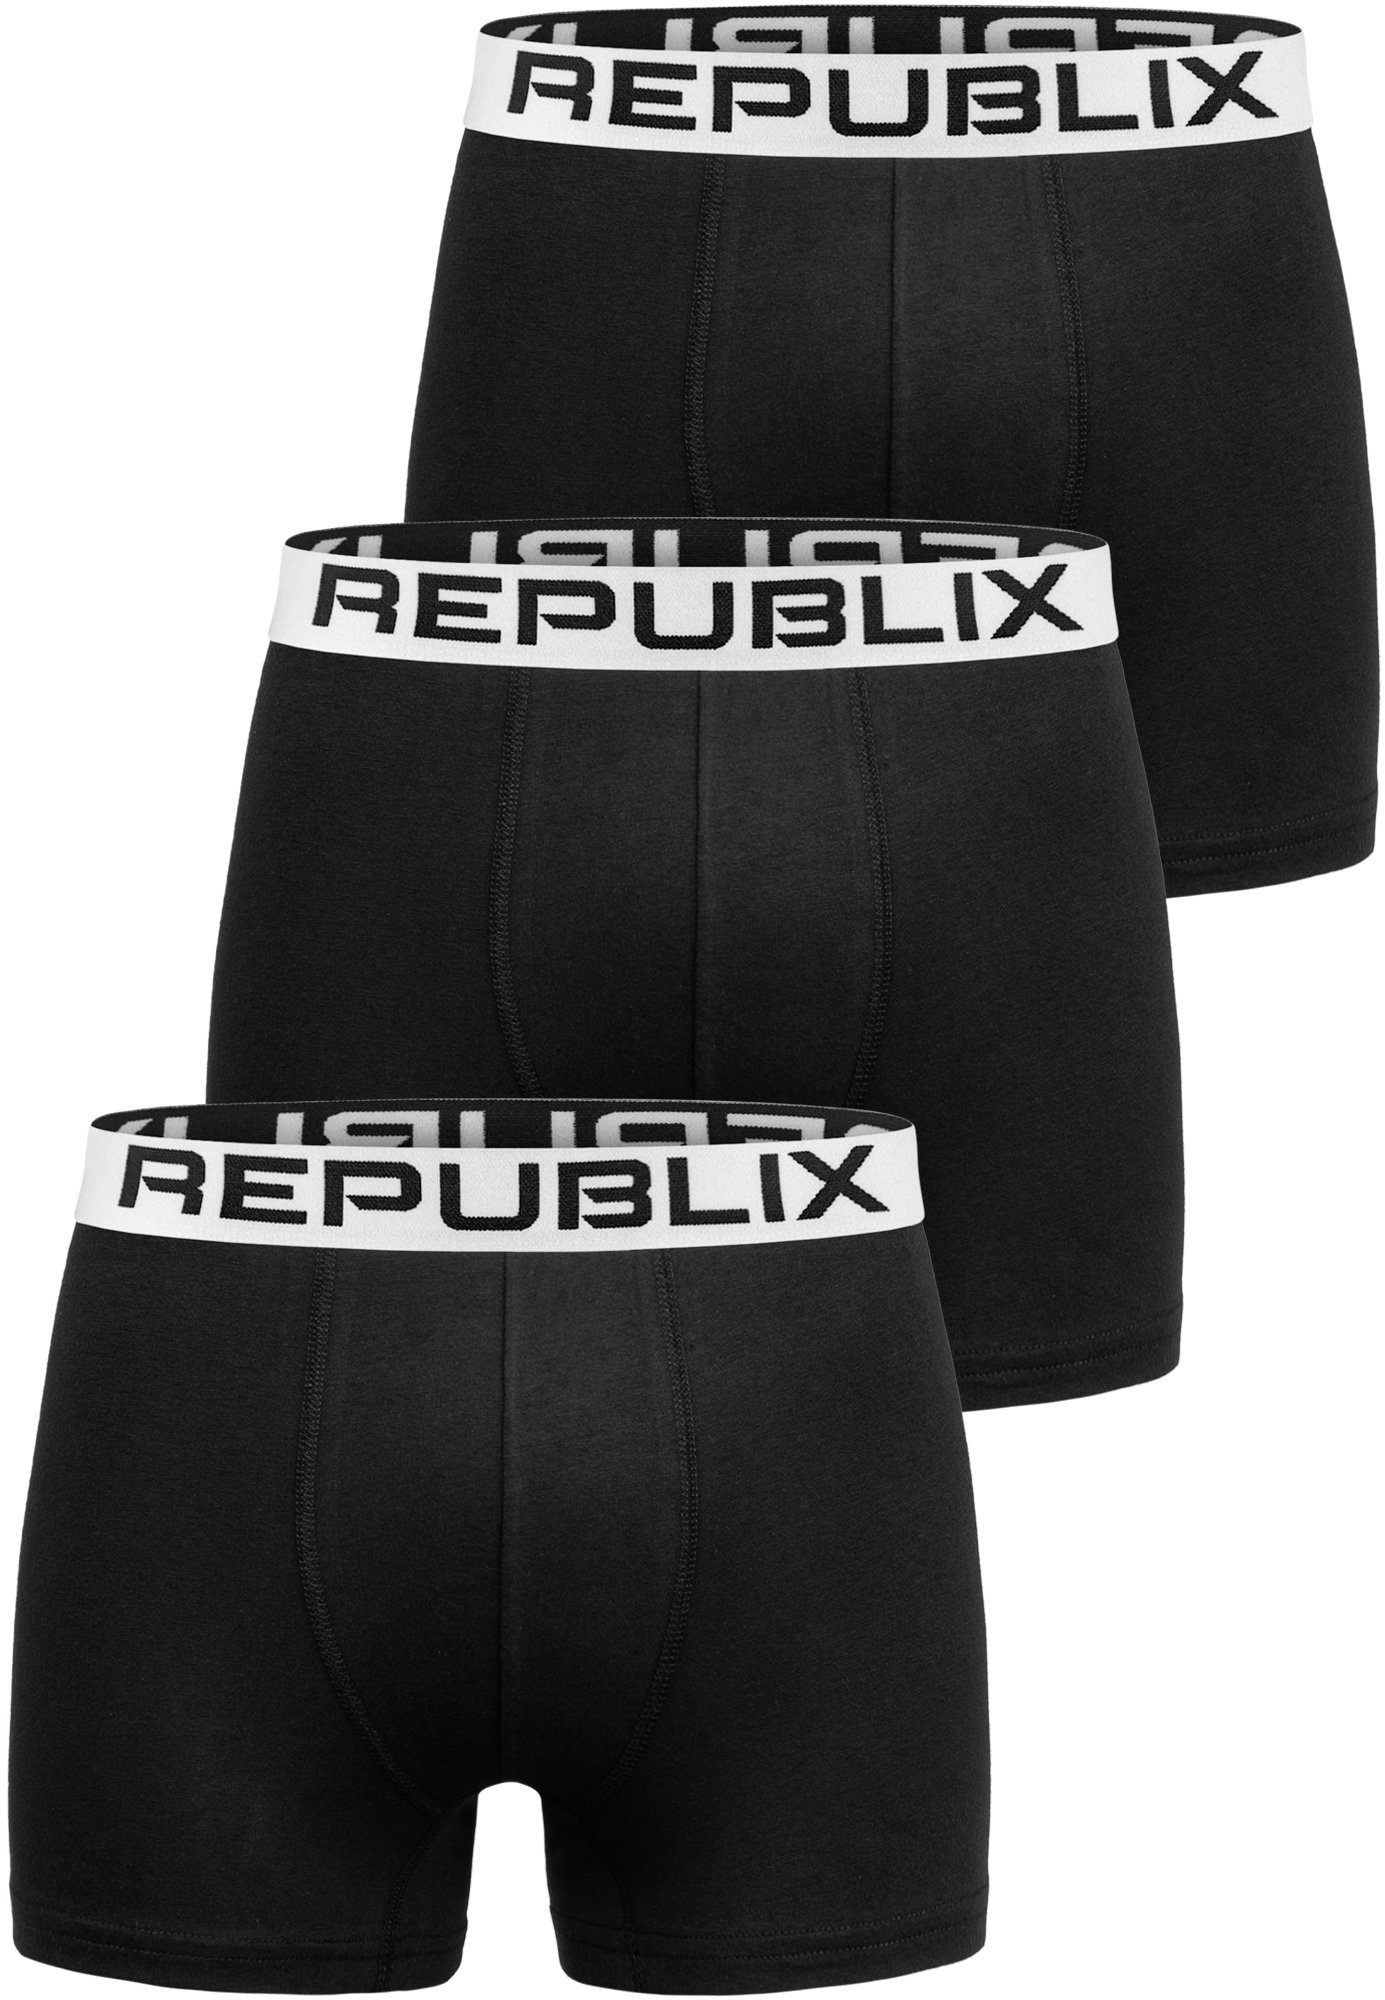 REPUBLIX Boxershorts DON (3er-Pack) Herren Baumwolle Männer Unterhose Unterwäsche Schwarz/Weiß